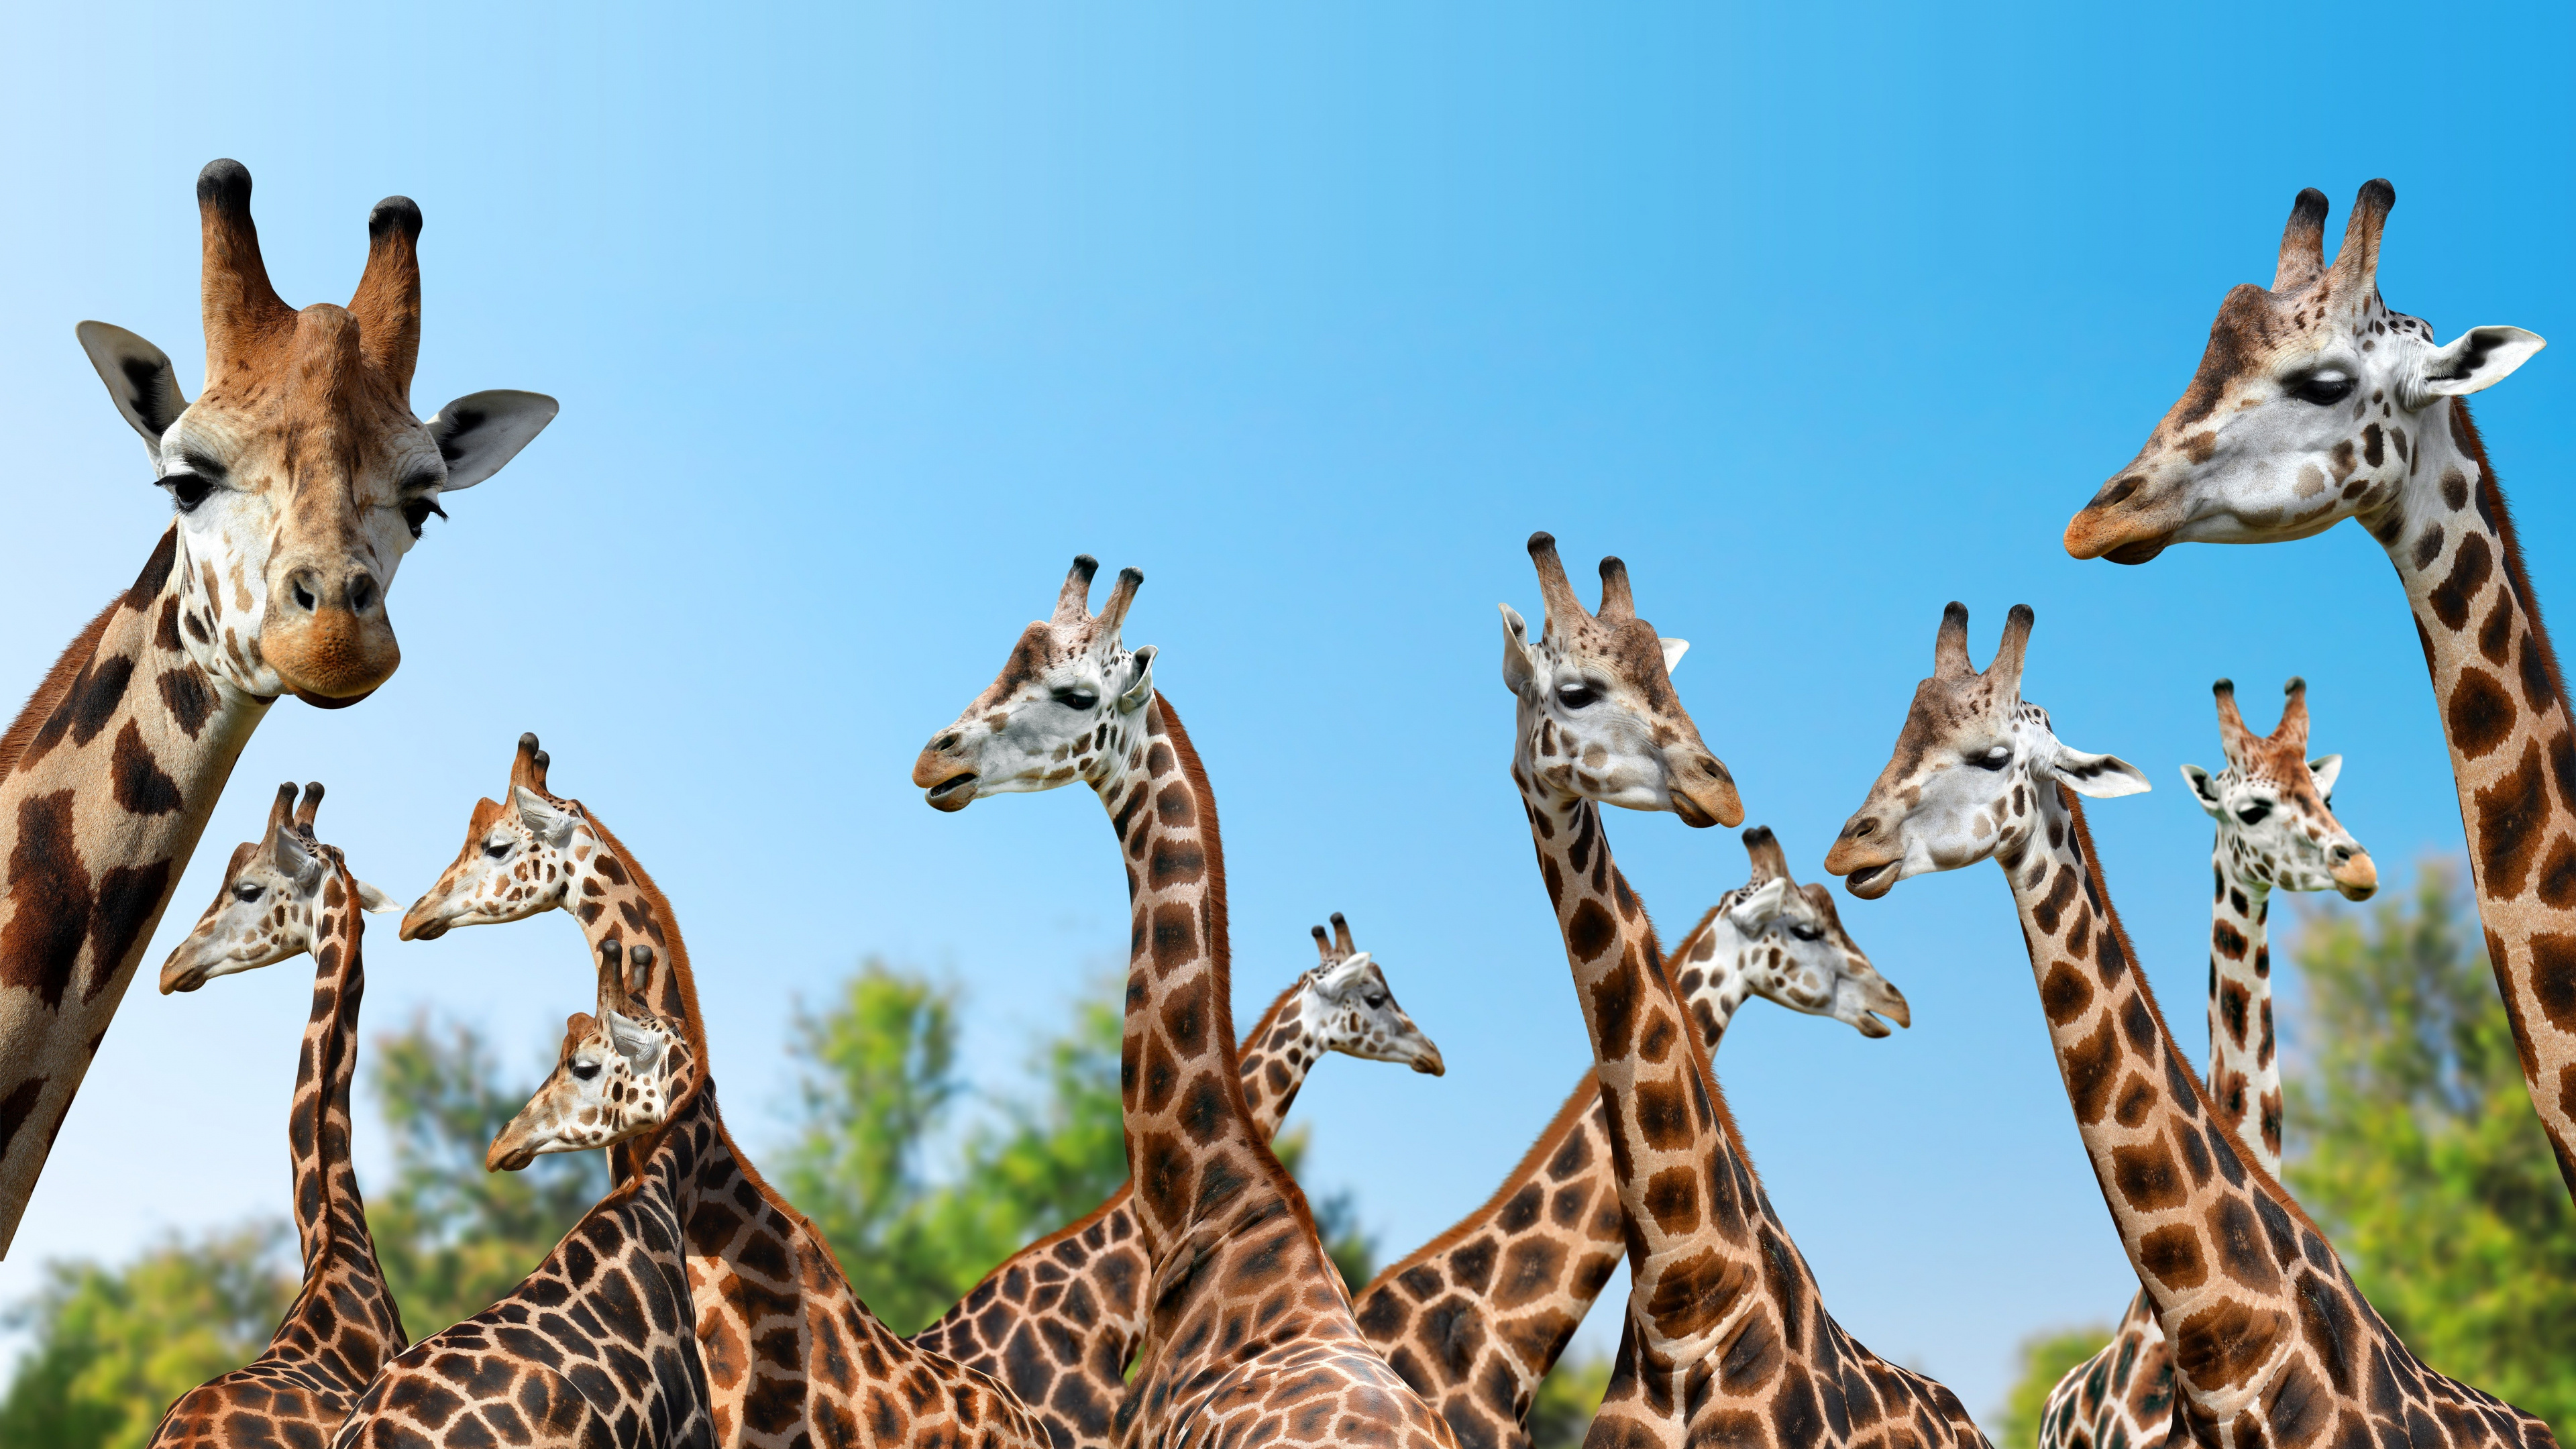 Giraffe, Spotted beauty, Widescreen wallpaper, Nature's marvel, 3840x2160 4K Desktop